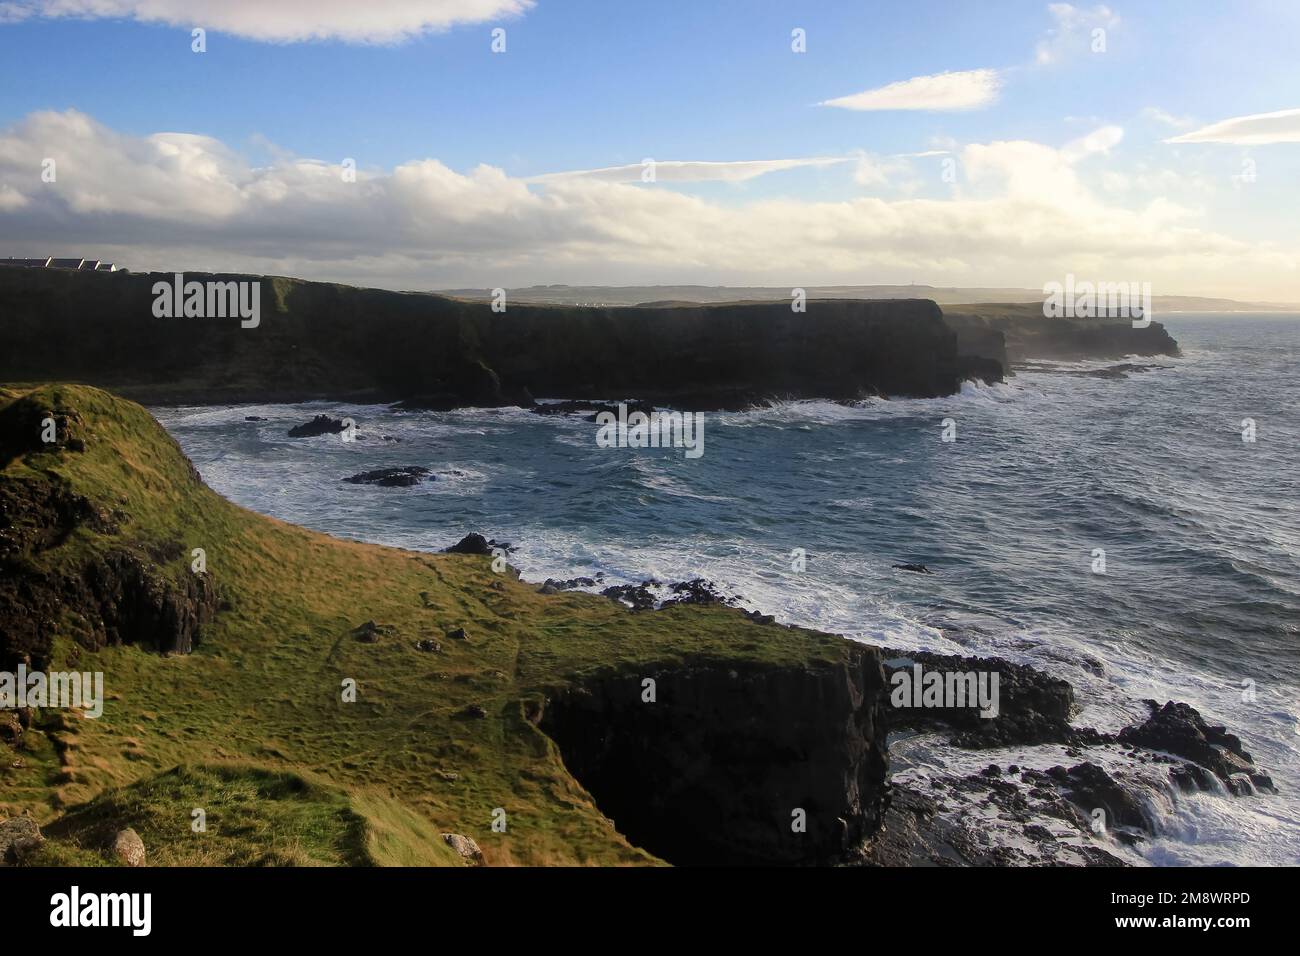 La calzada del Gigante, situada en Irlanda del Norte (Condado de Antrim), es uno de los monumentos más emblemáticos de Irlanda y patrimonio mundial de la UNESCO Foto de stock